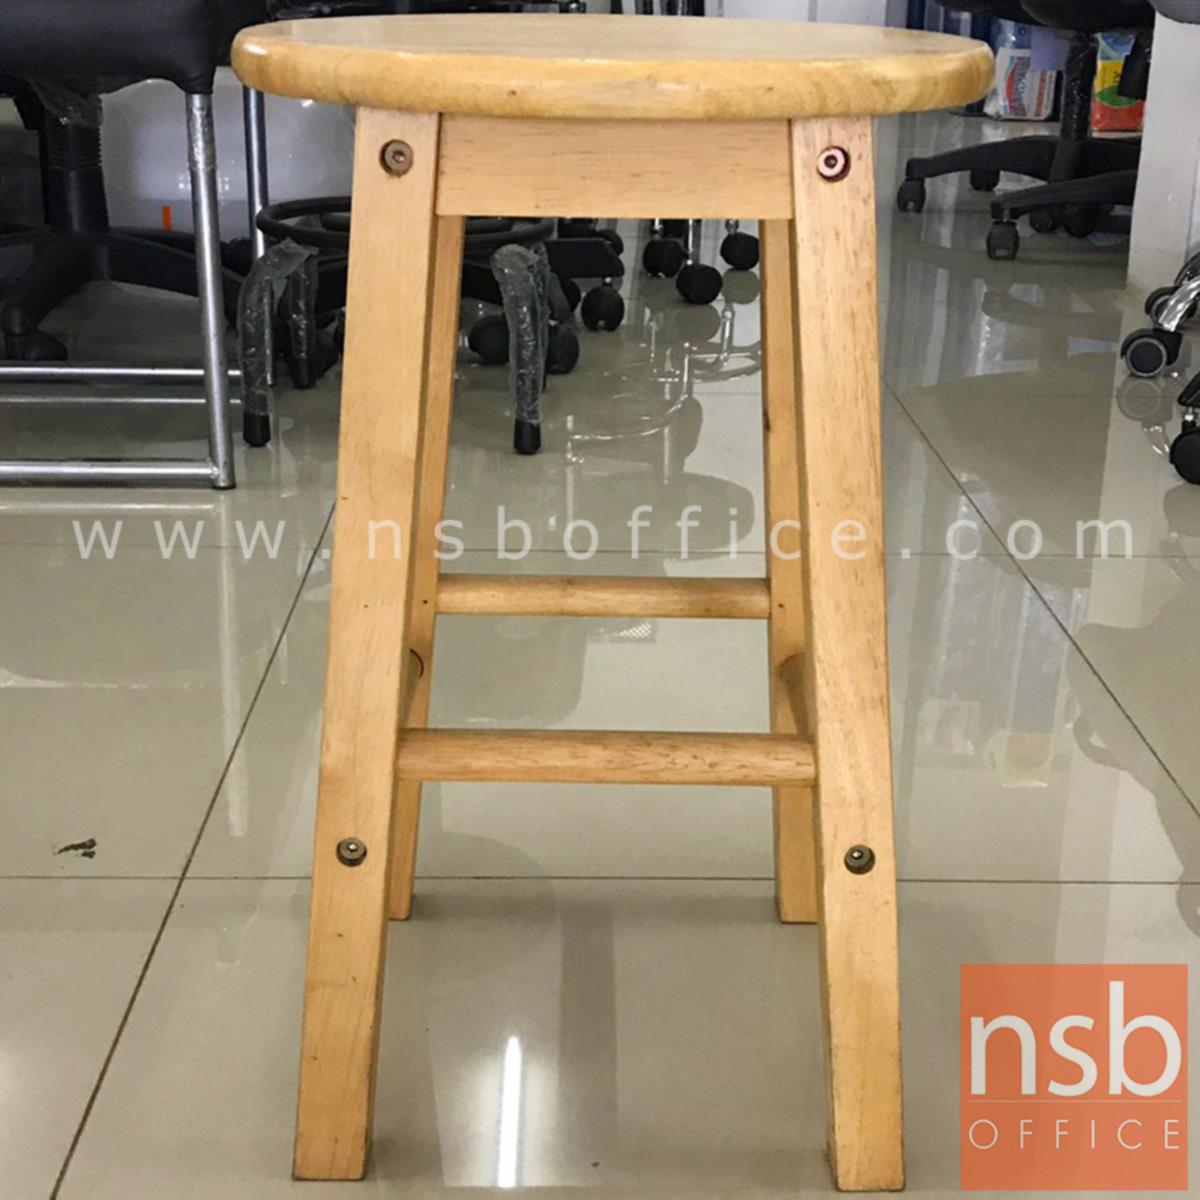 เก้าอี้สตูลไม้ล้วน รุ่น NSB-CHAIR3 ขนาด 31Di*47H cm. (STOCK-1 ตัว)